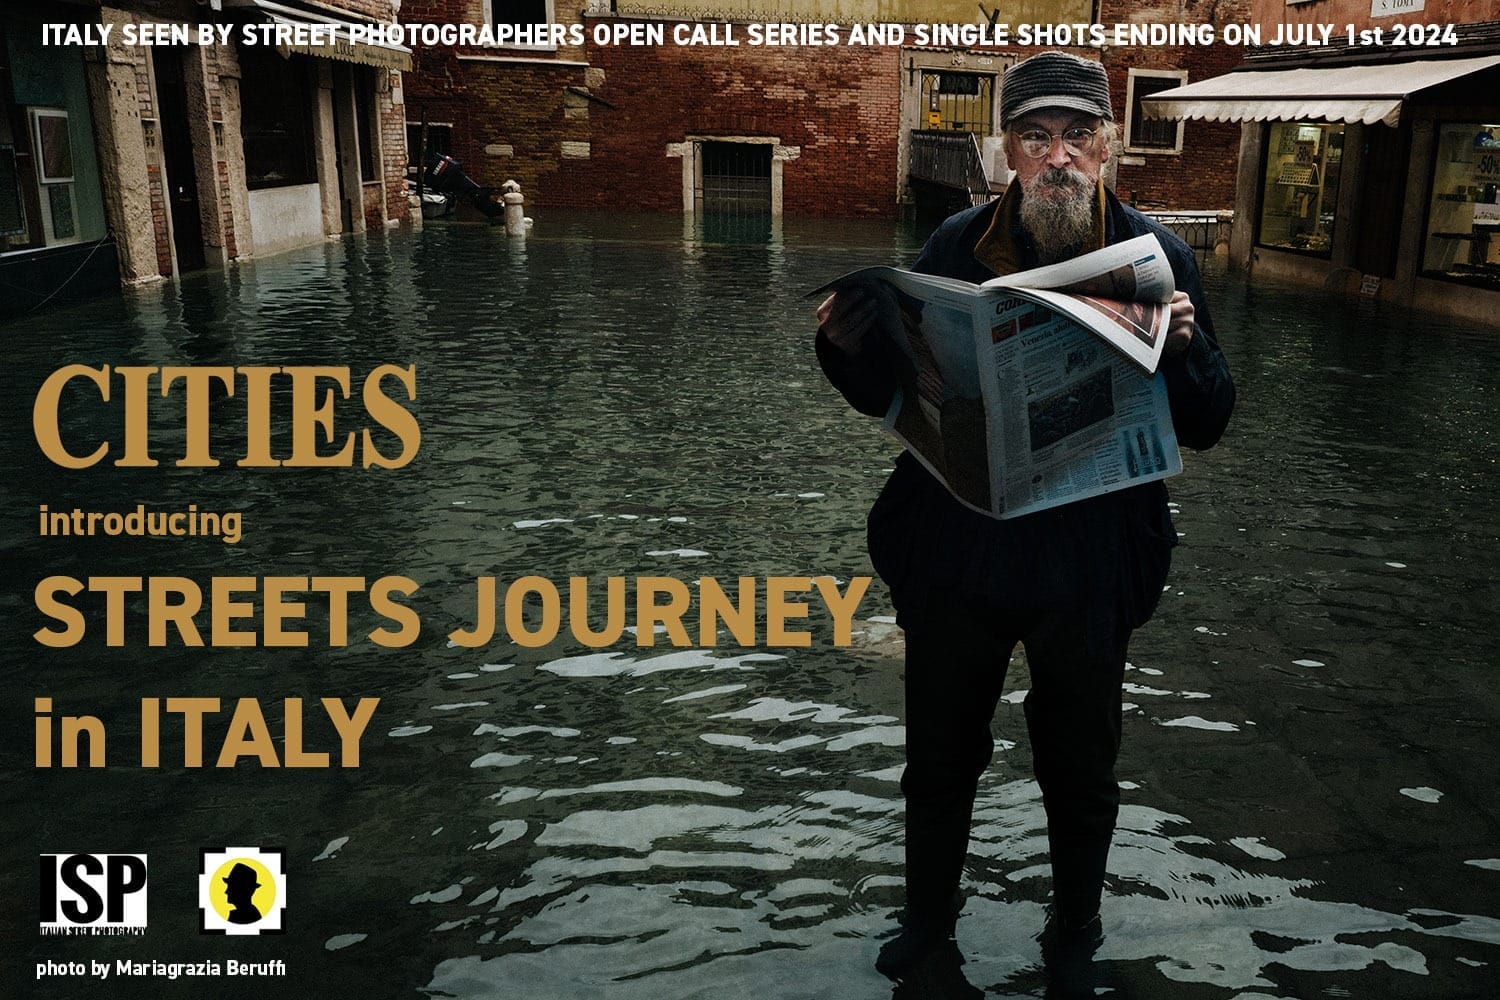 Street Journey: una Call per un libro sulla Street Photography in Italia